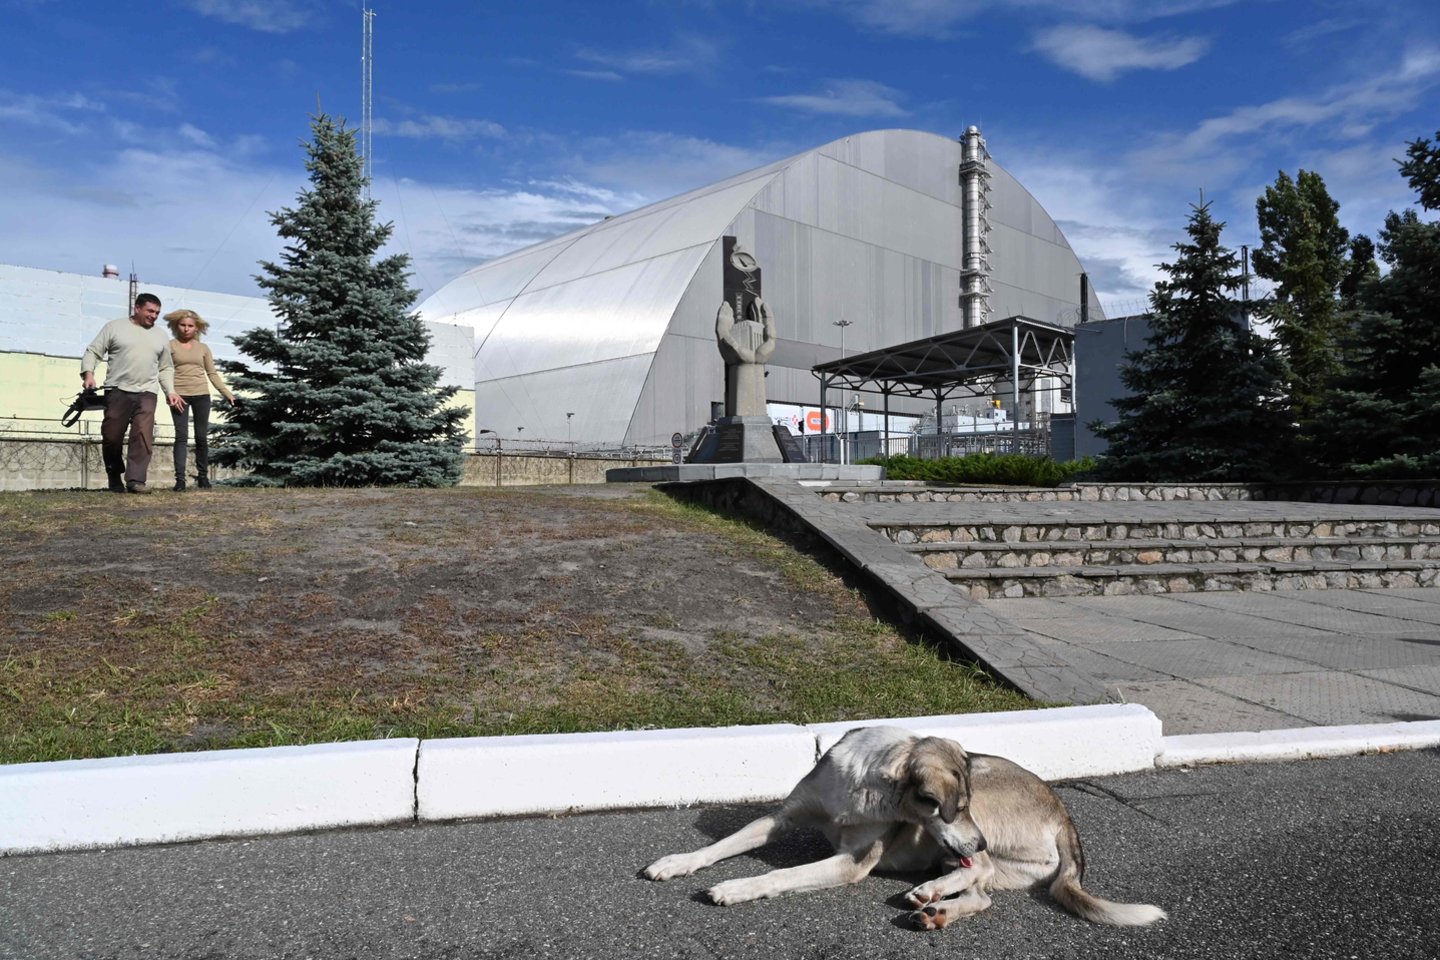 Černobylio atominę elektrinę supanti teritorija greitai bus paversta turistine zona. Tokią informaciją trečiadienį paskelbė dekretą pasira<br>AFP/Scanpix nuotr.